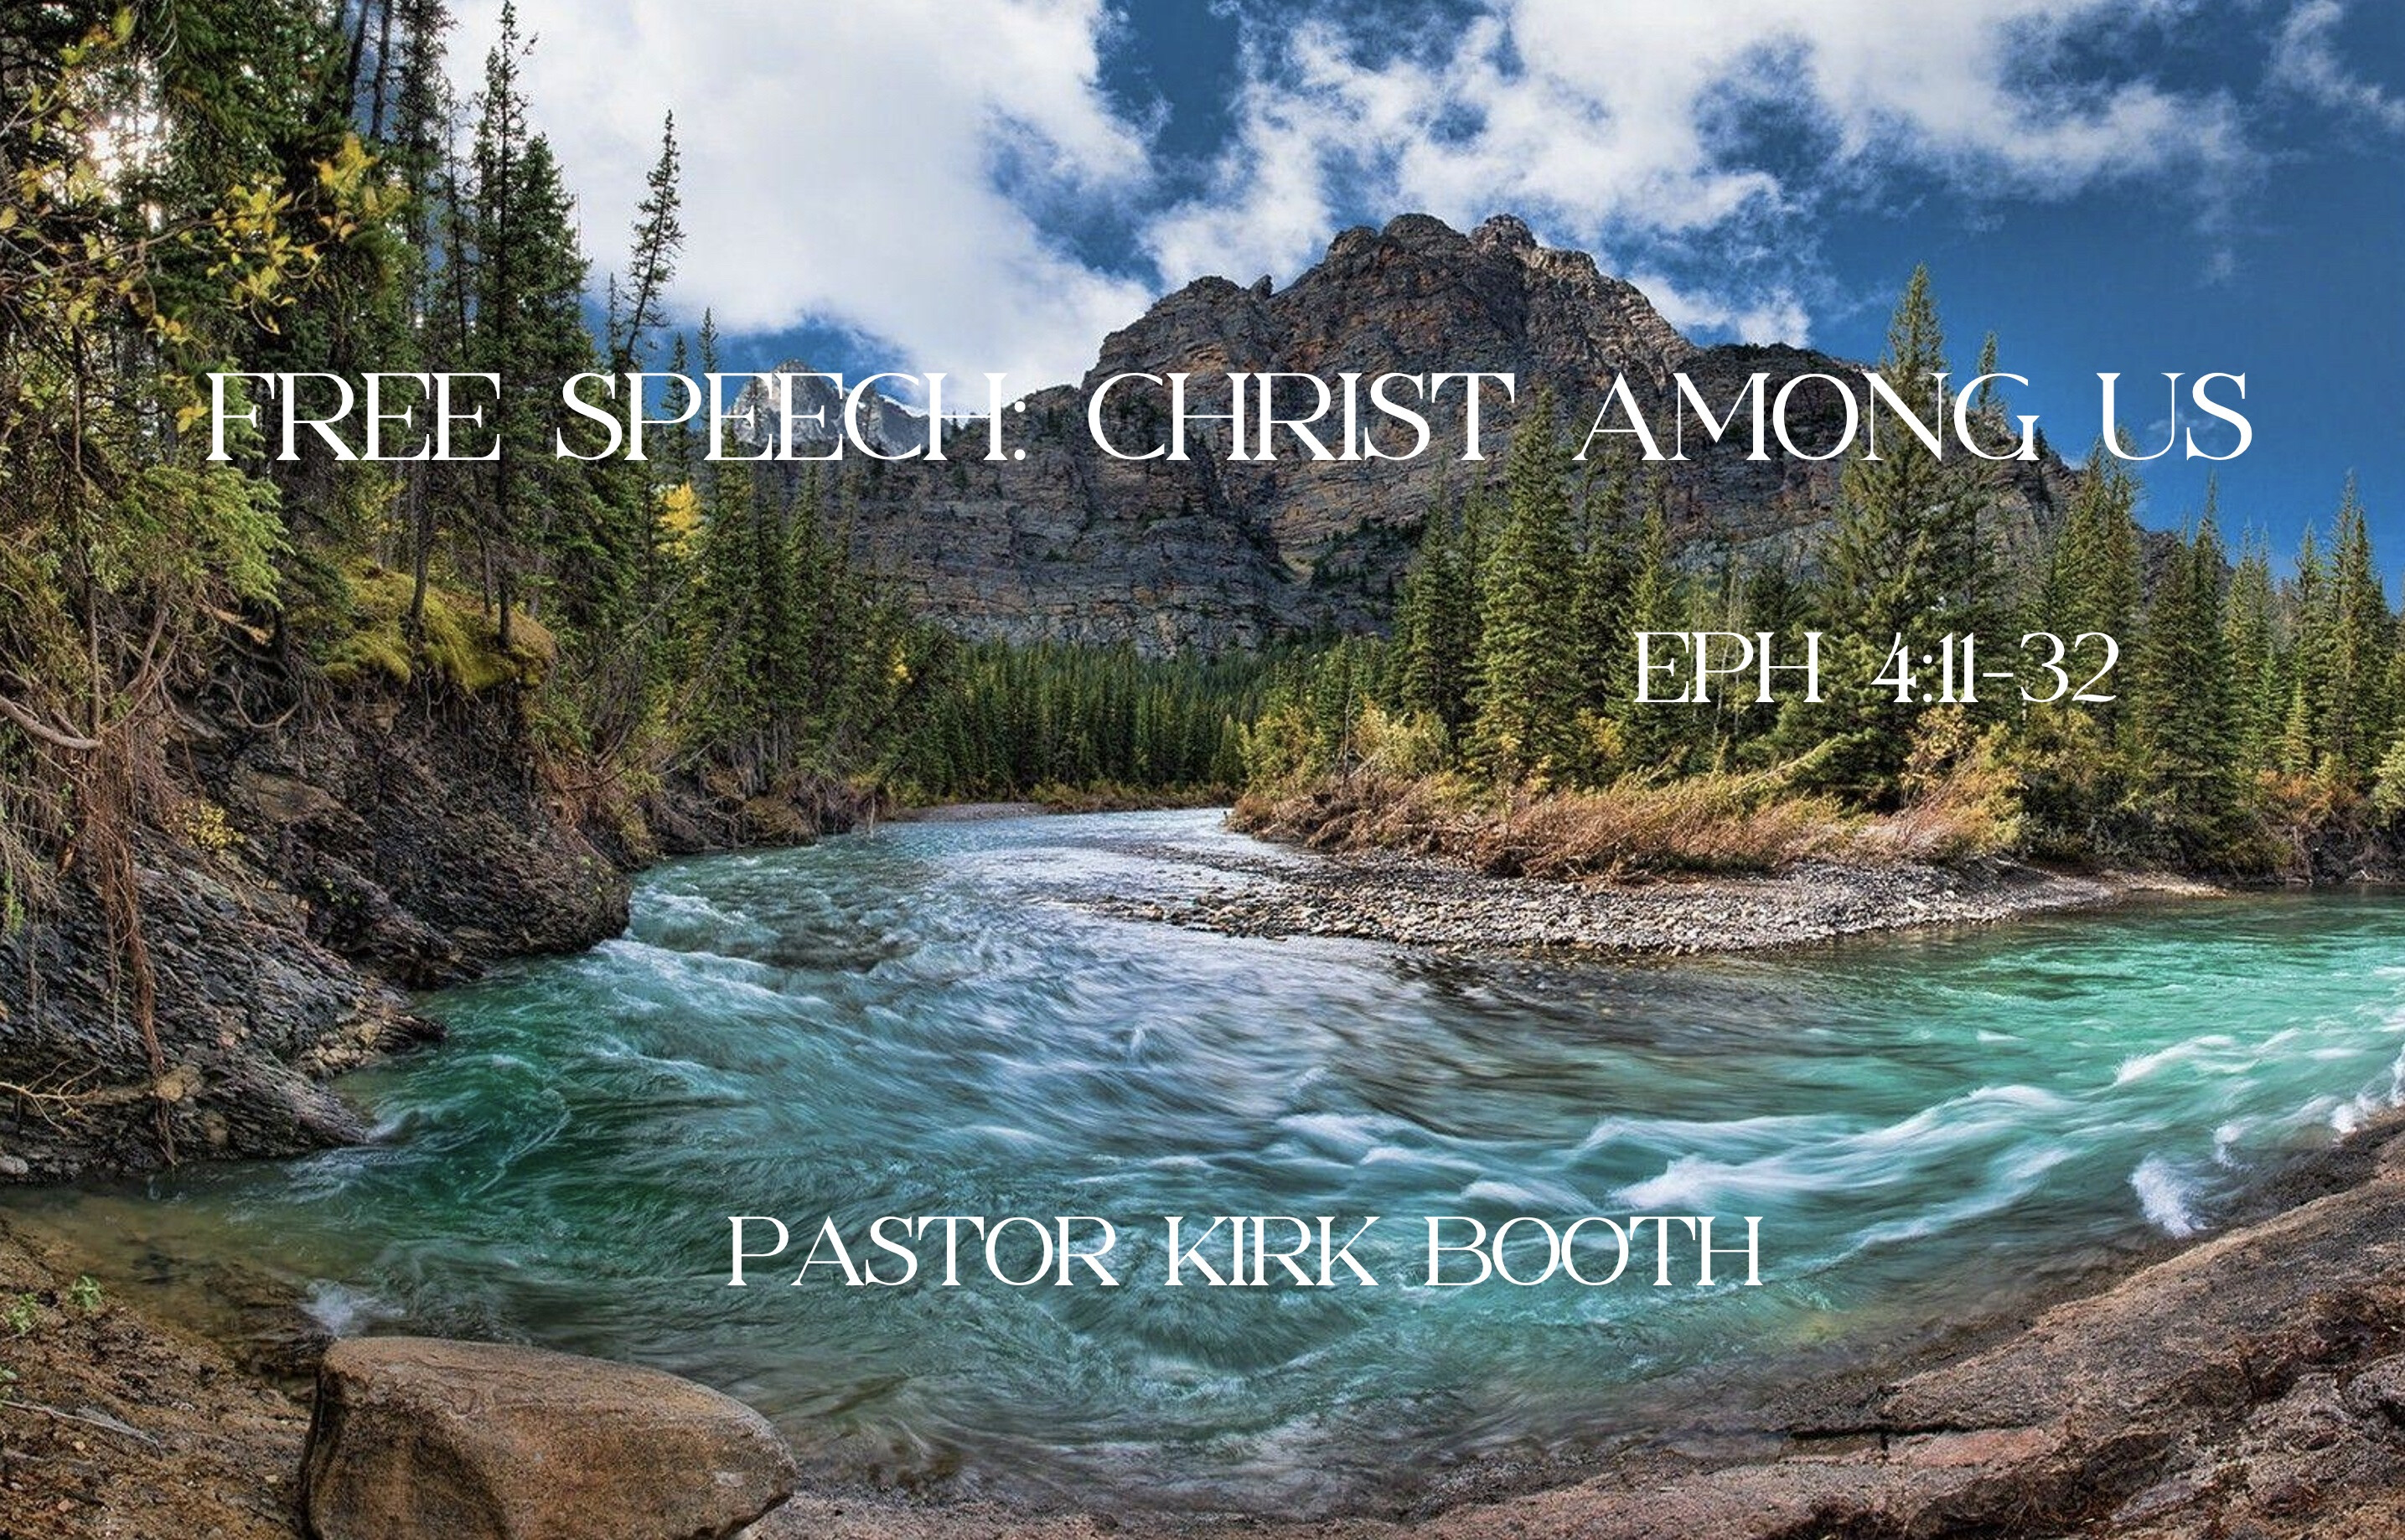 FREE SPEECH: CHRIST AMONG US